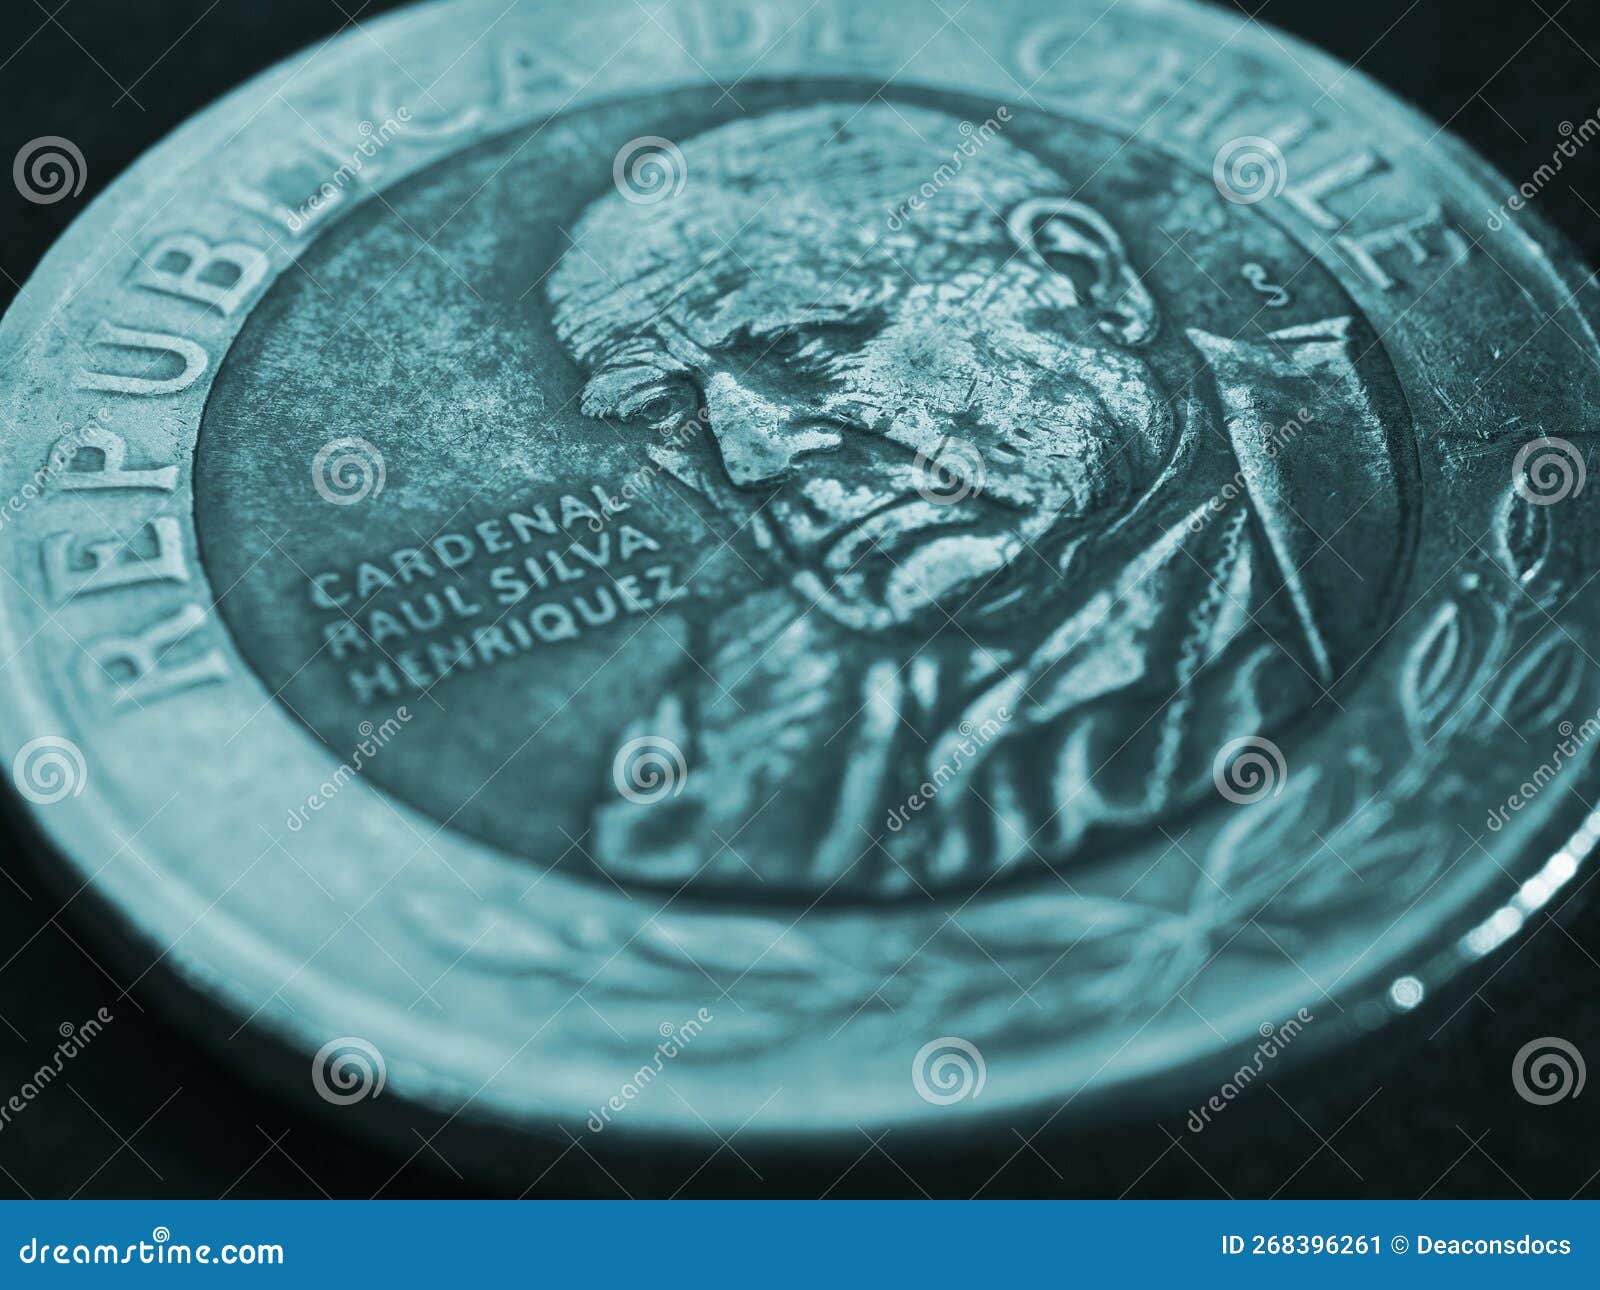 coin of 500 chilean pesos ÃÂlose up. peso of chile. news about economy or banks. loan and credit. money and taxes. turquoise